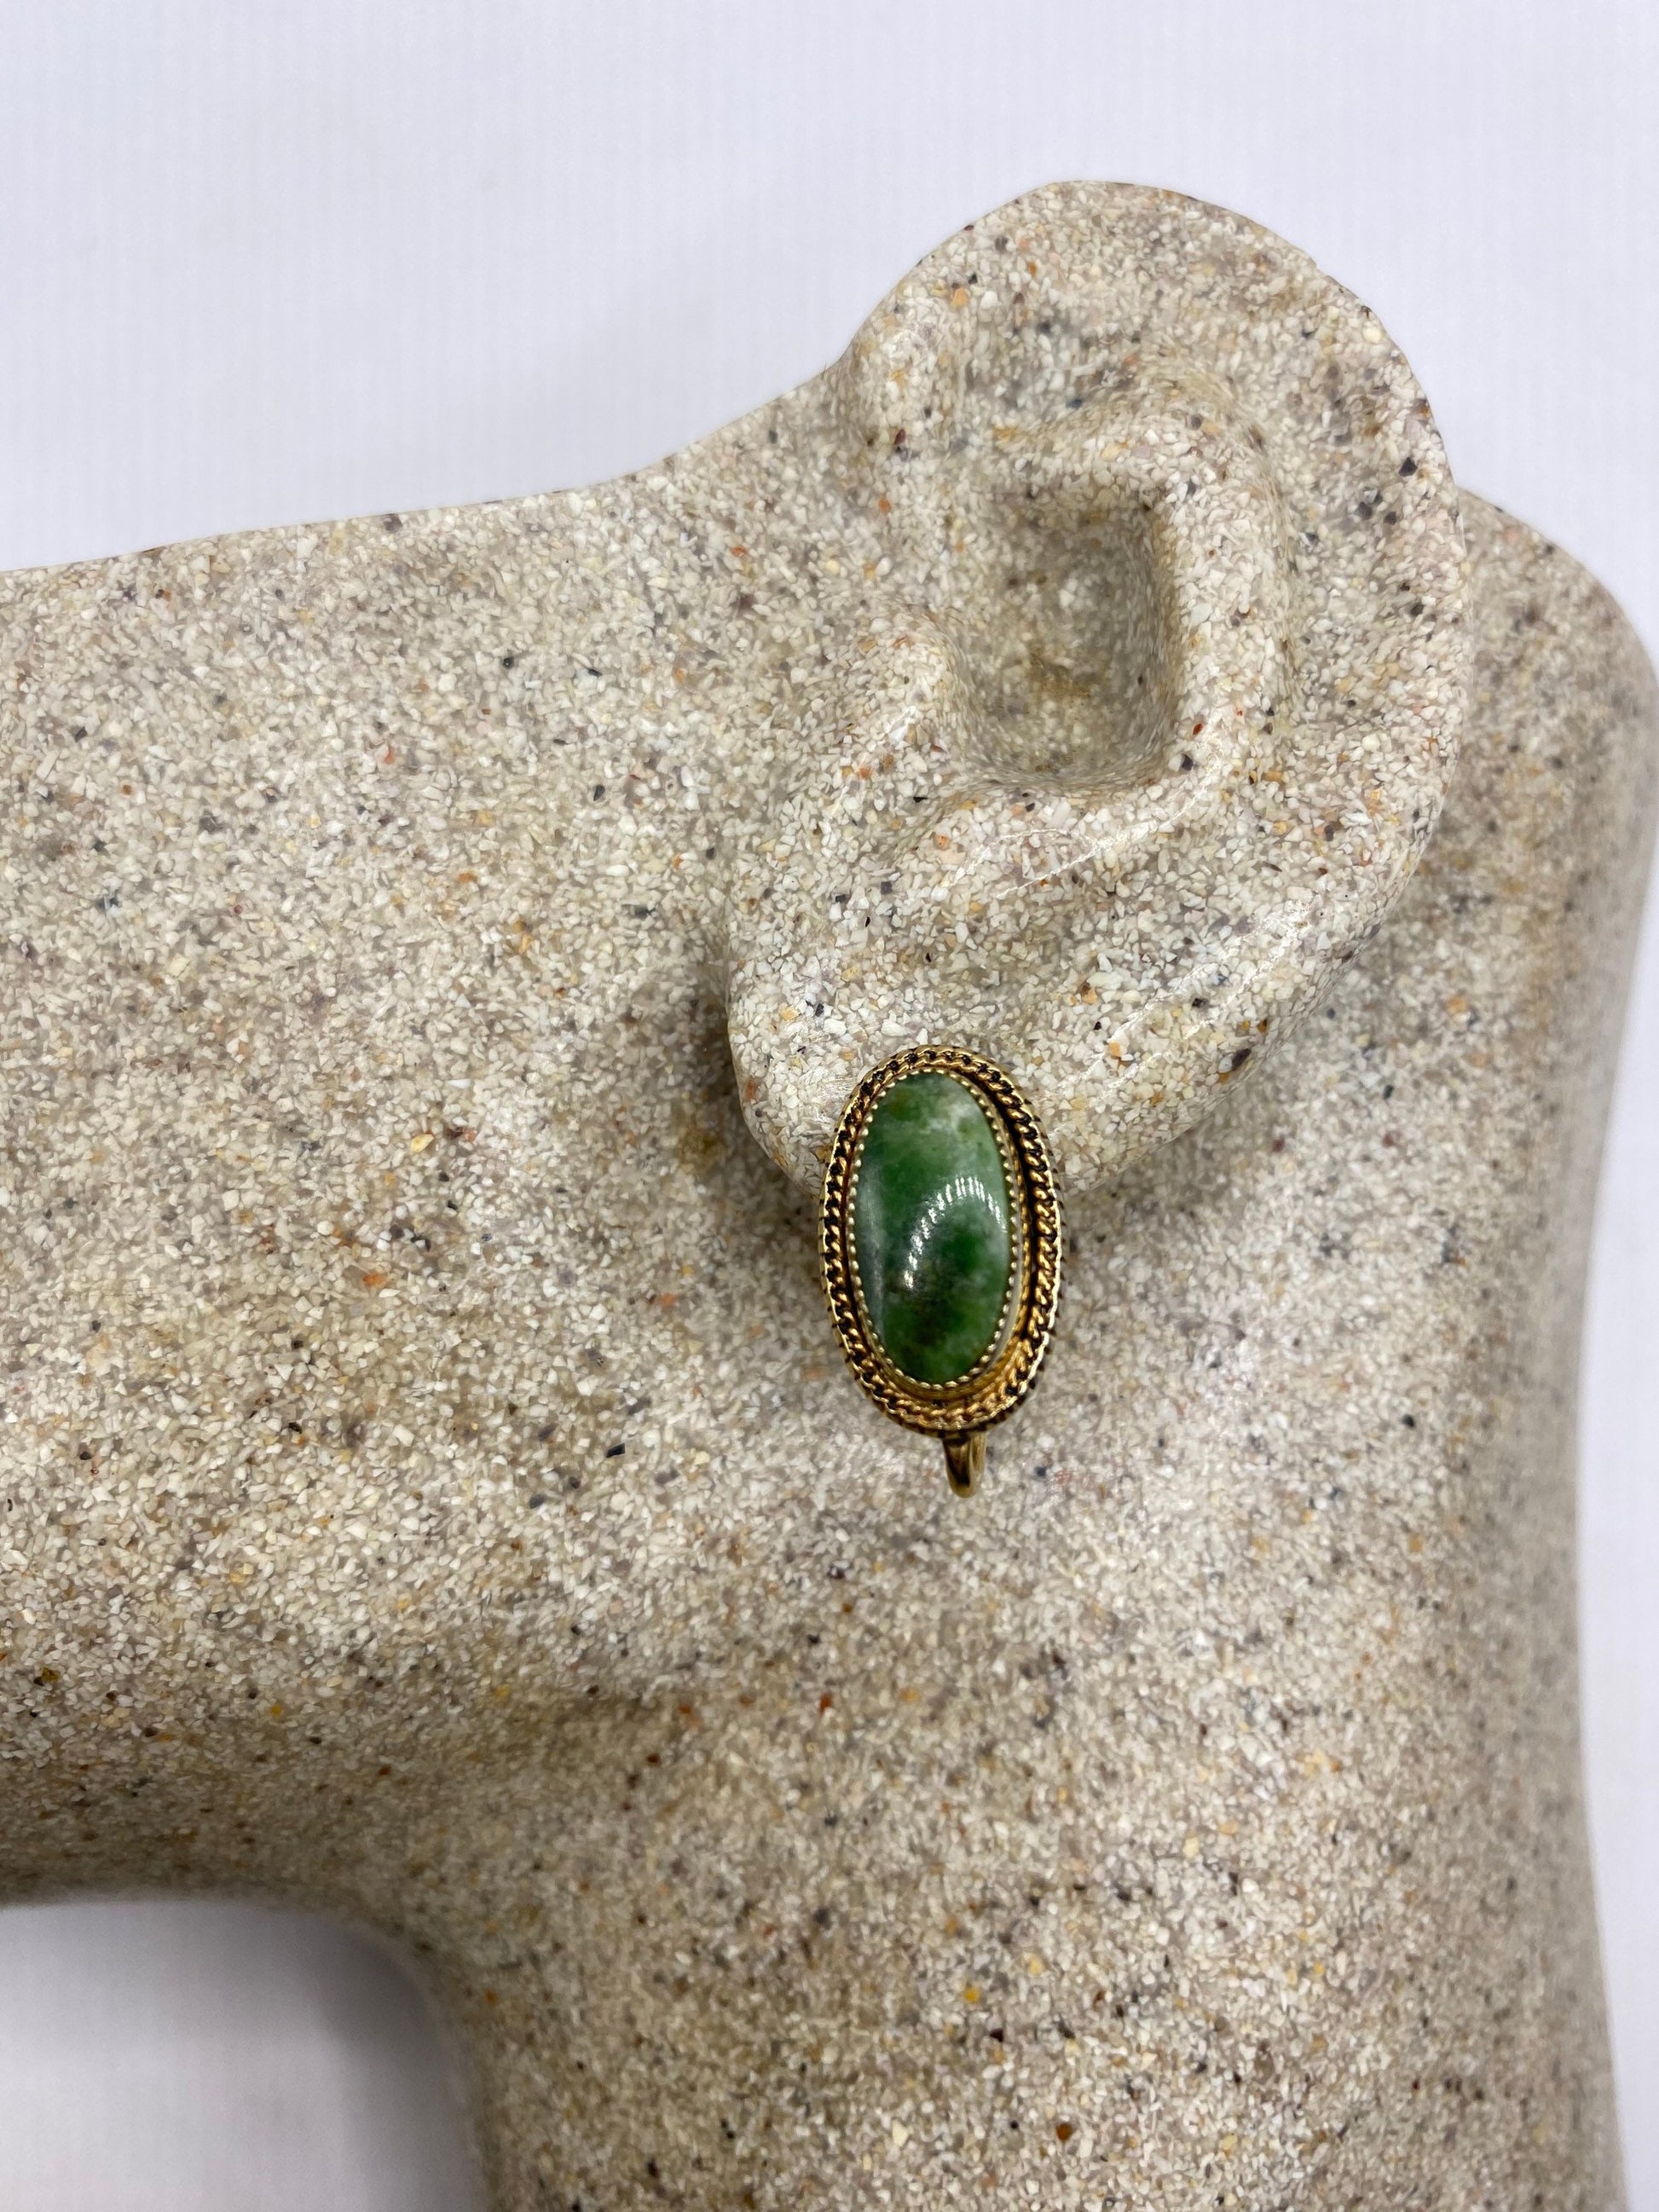 Vintage Genuine Green Jade Gold filled Screw Back Earrings